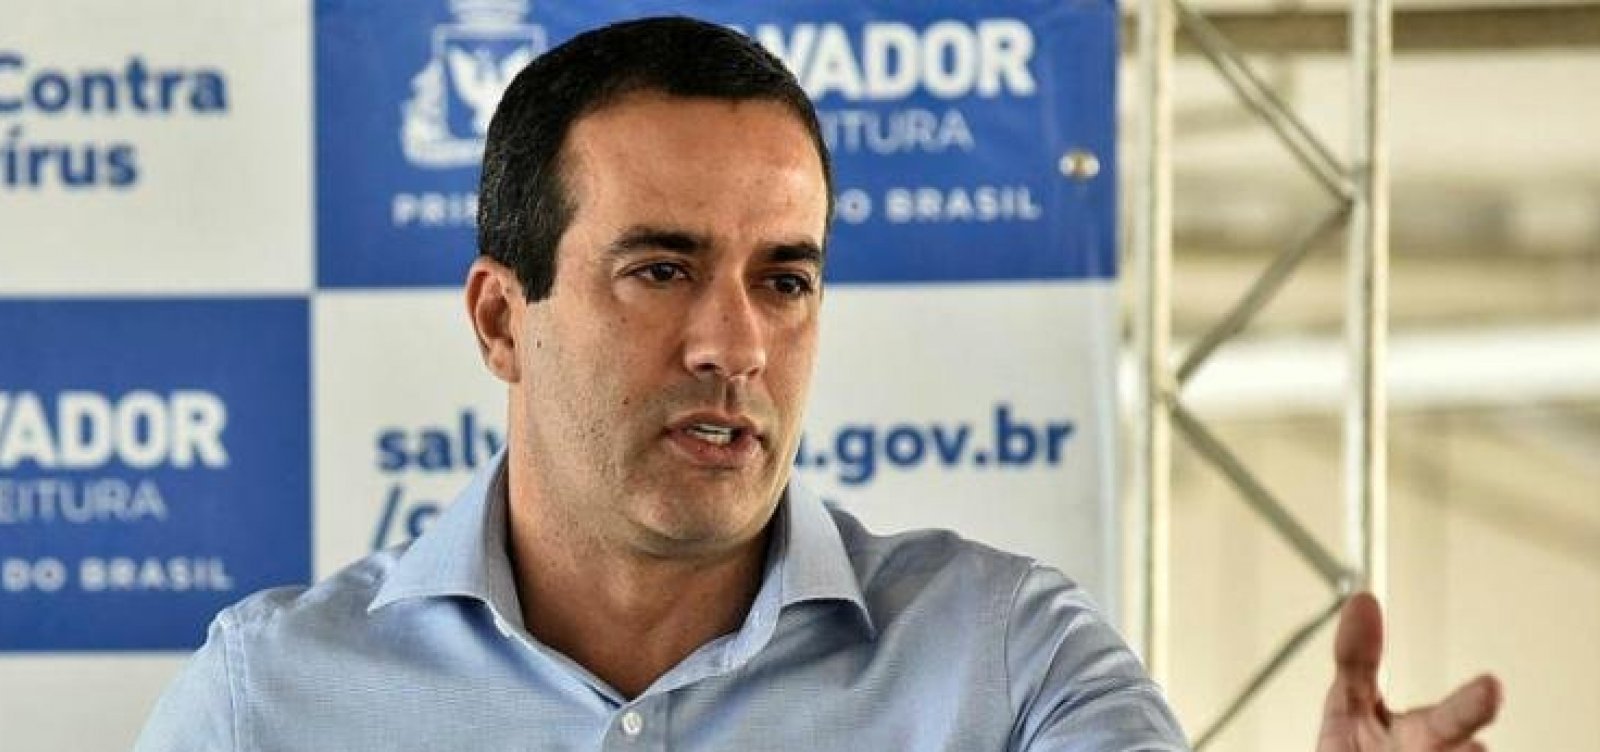 Coronavírus virou uma gripe, declara prefeito de Salvador